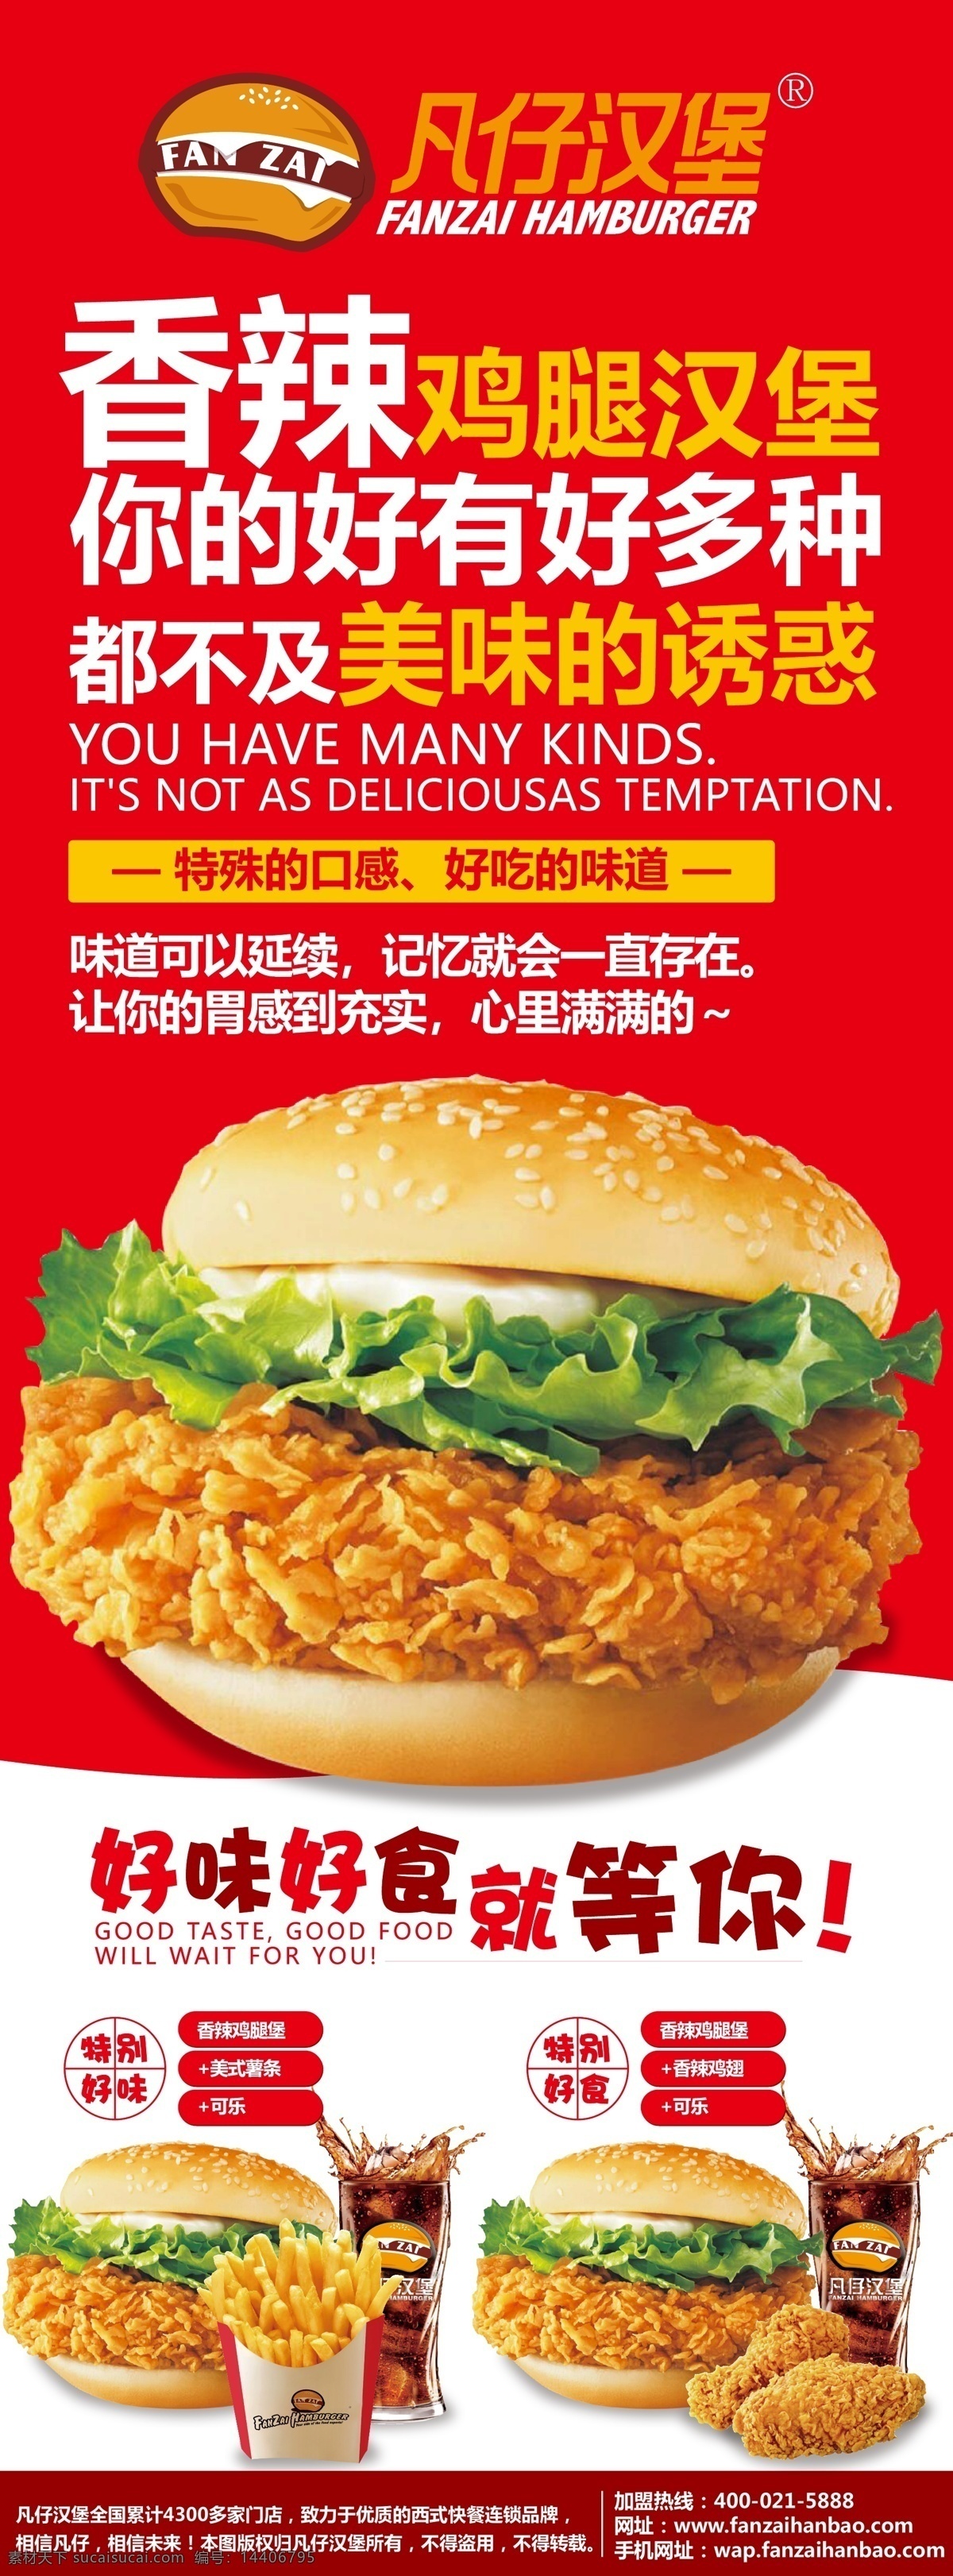 凡仔汉堡 宣传海报 薯条 鸡肉卷 鸡翅 鸡块 可乐 奶茶 汉堡海报 汉堡挂画 汉堡墙画 汉堡套餐 汉堡灯箱 公司客户